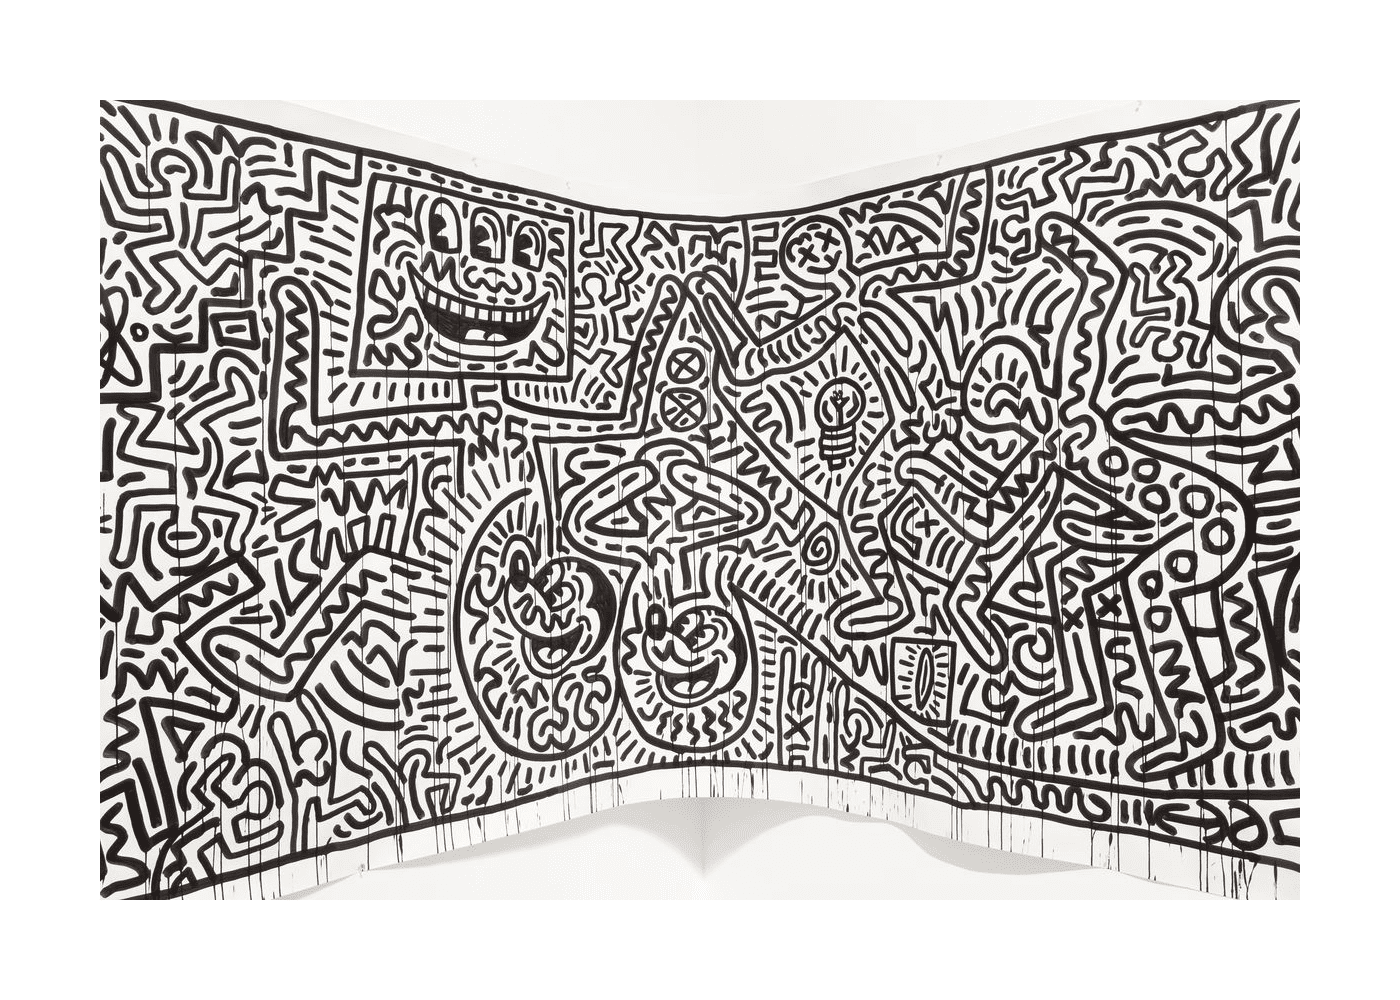  um afresco de Keith Haring 